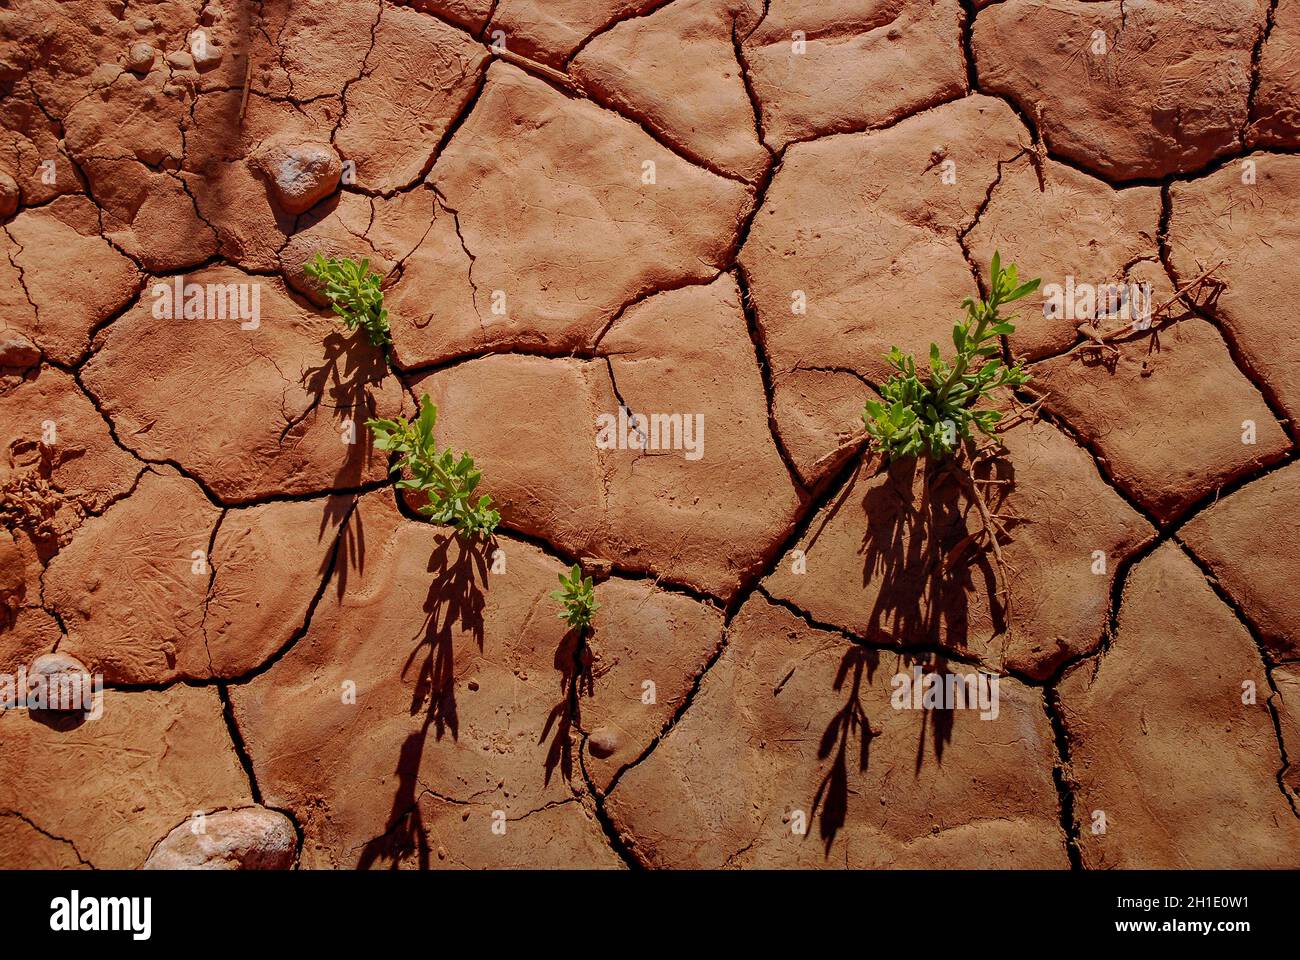 Arid soil of the Atacama Desert, Chile Stock Photo